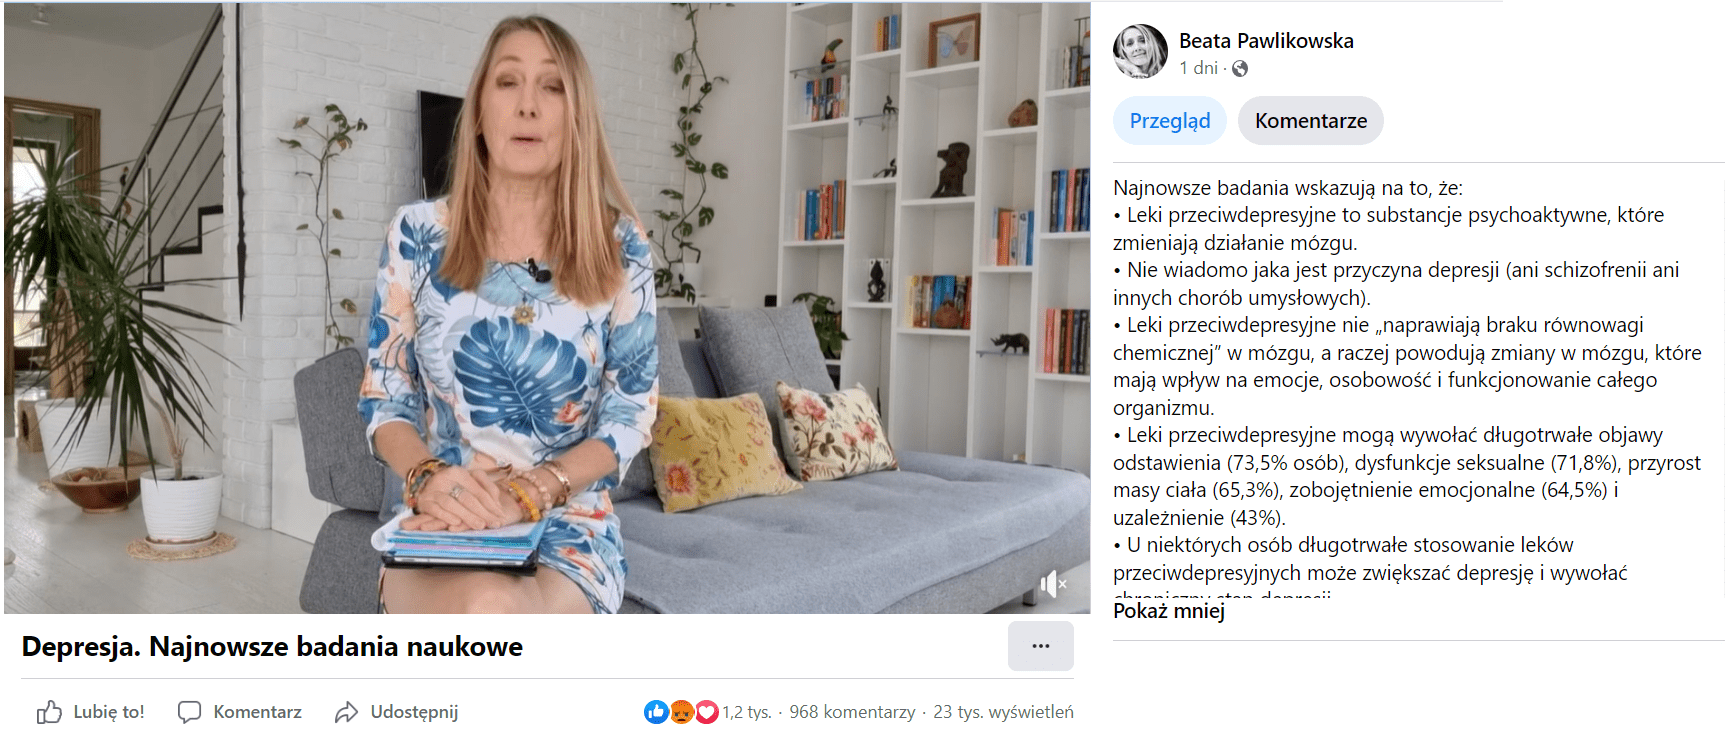 Zrzut ekranu z facebookowego profilu Beata Pawlikowska, na którym opublikowano nagranie pt. „Depresja. Najnowsze badania naukowe”. 804 reakcje, 571 komentarzy, 13 tys. wyświetleń.